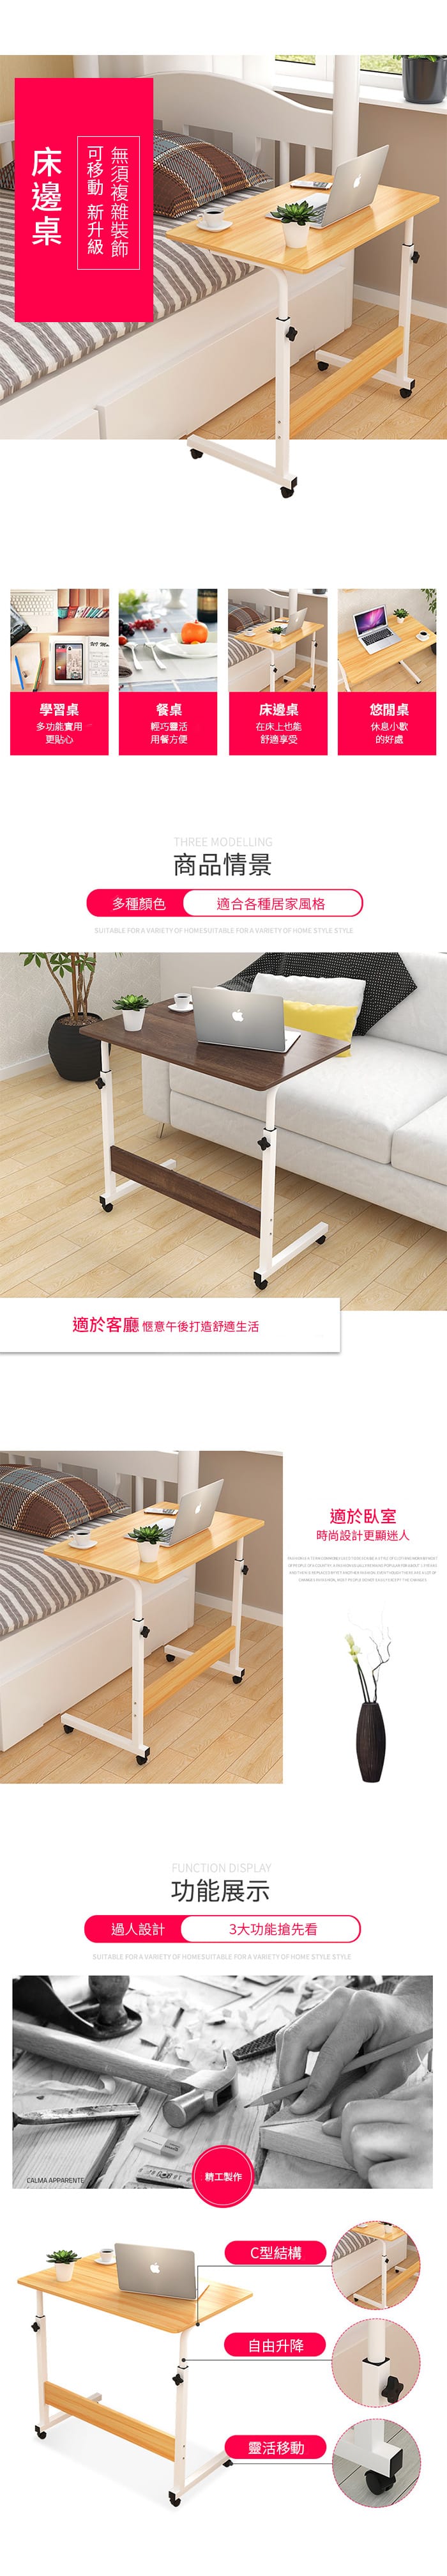 床邊升降懶人桌(60x40x62~88cm) 工作桌/筆電桌/滑輪移動/C型結構